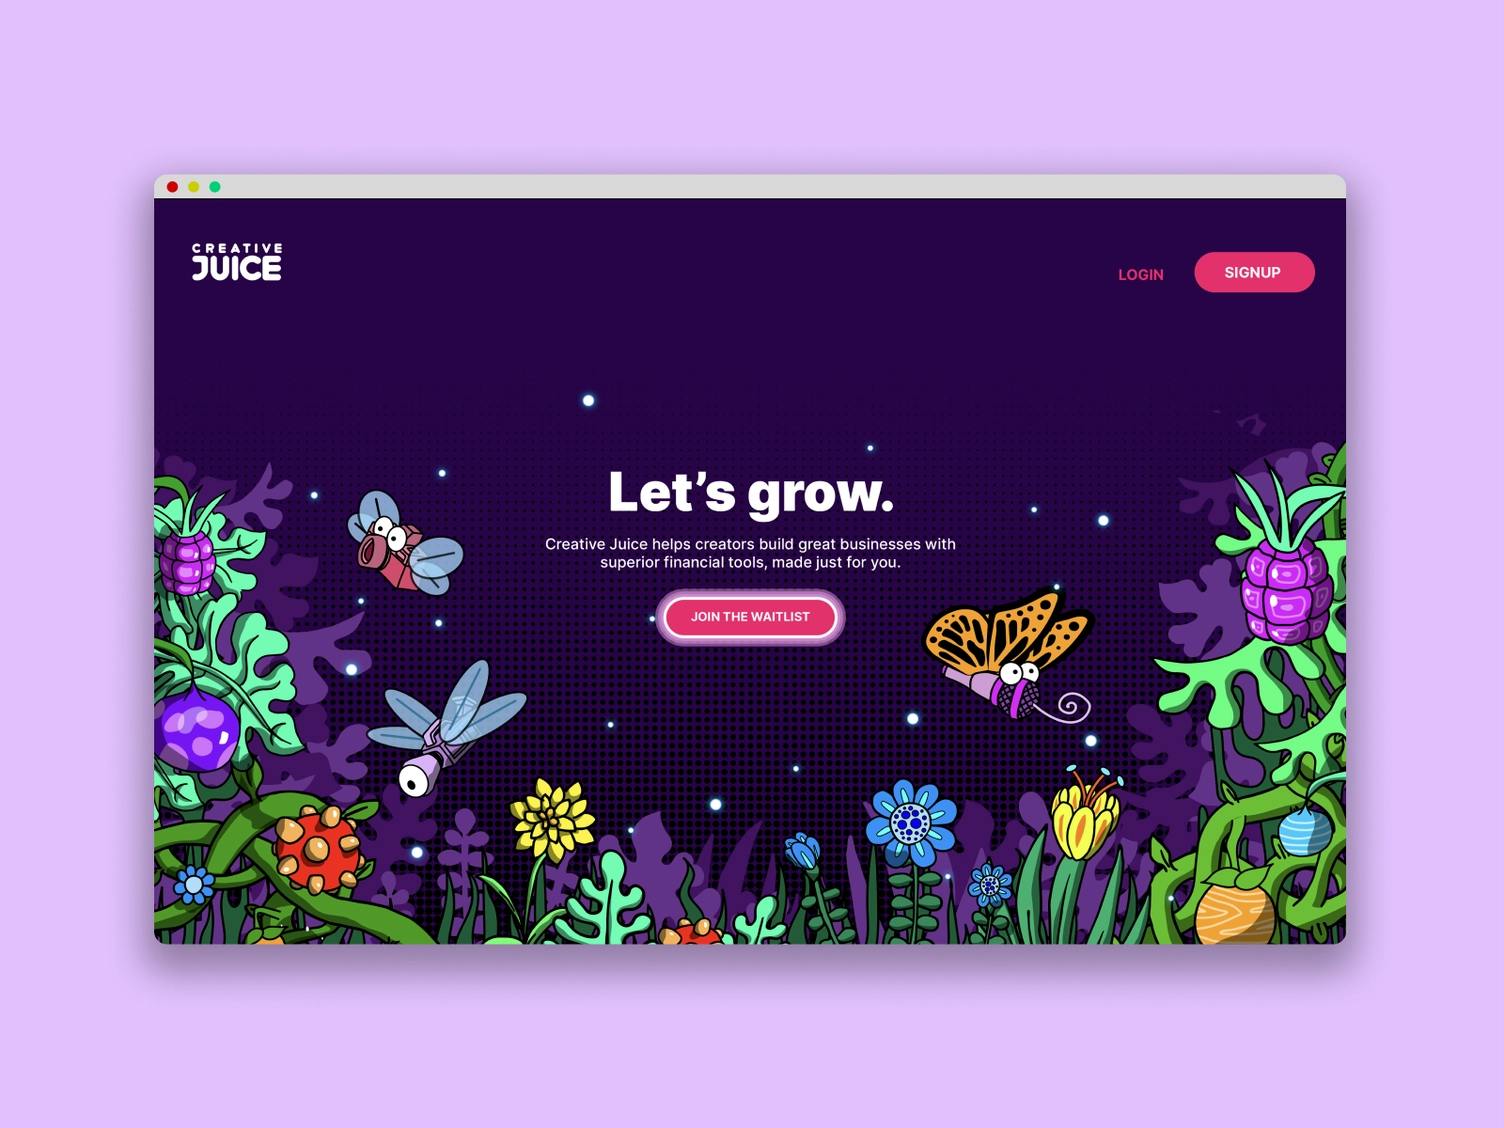 Creative Juice website design